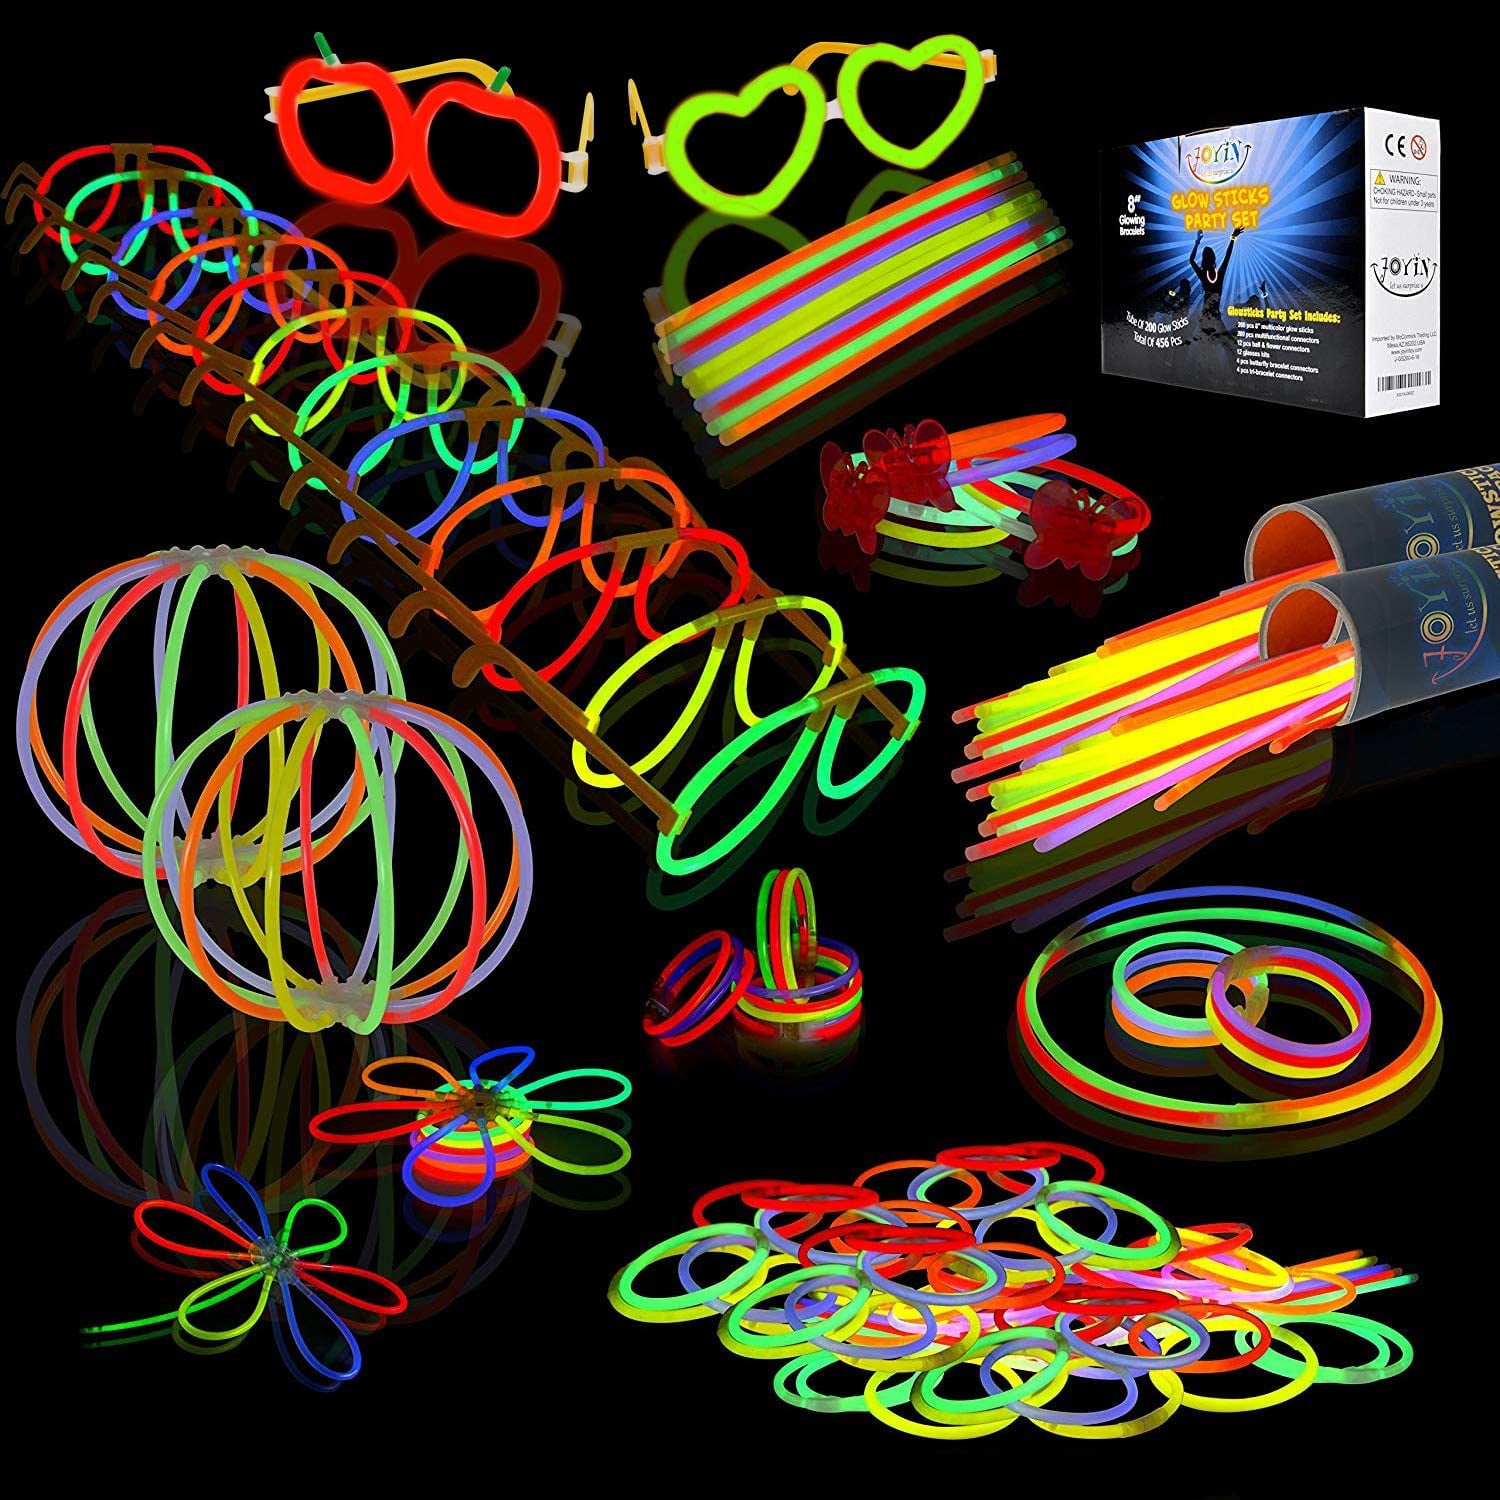 300 Glowsticks 656 Pcs Total Light Up Toys Glow Sticks Bracelet Necklace Light-U 